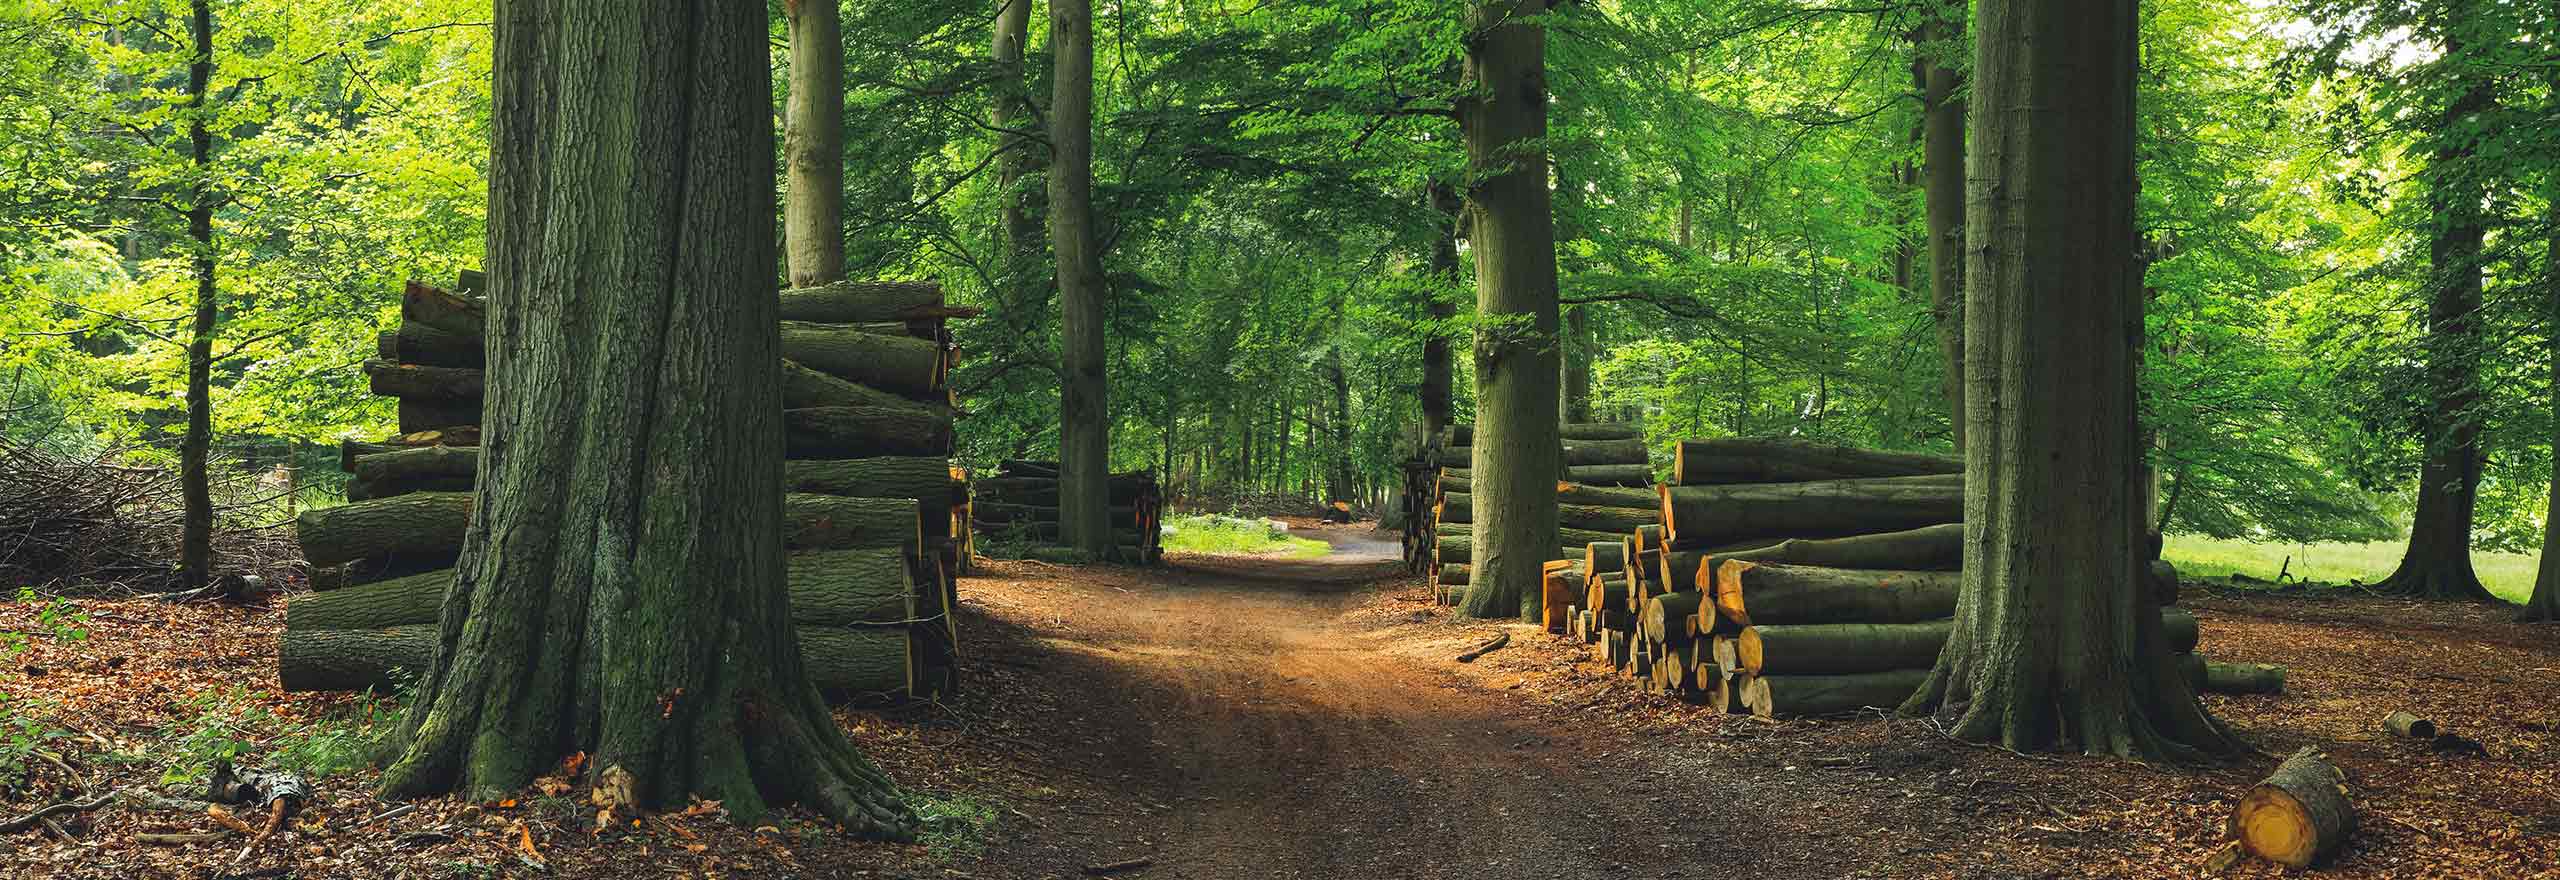 伐採された木や材木が積まれた緑の森 